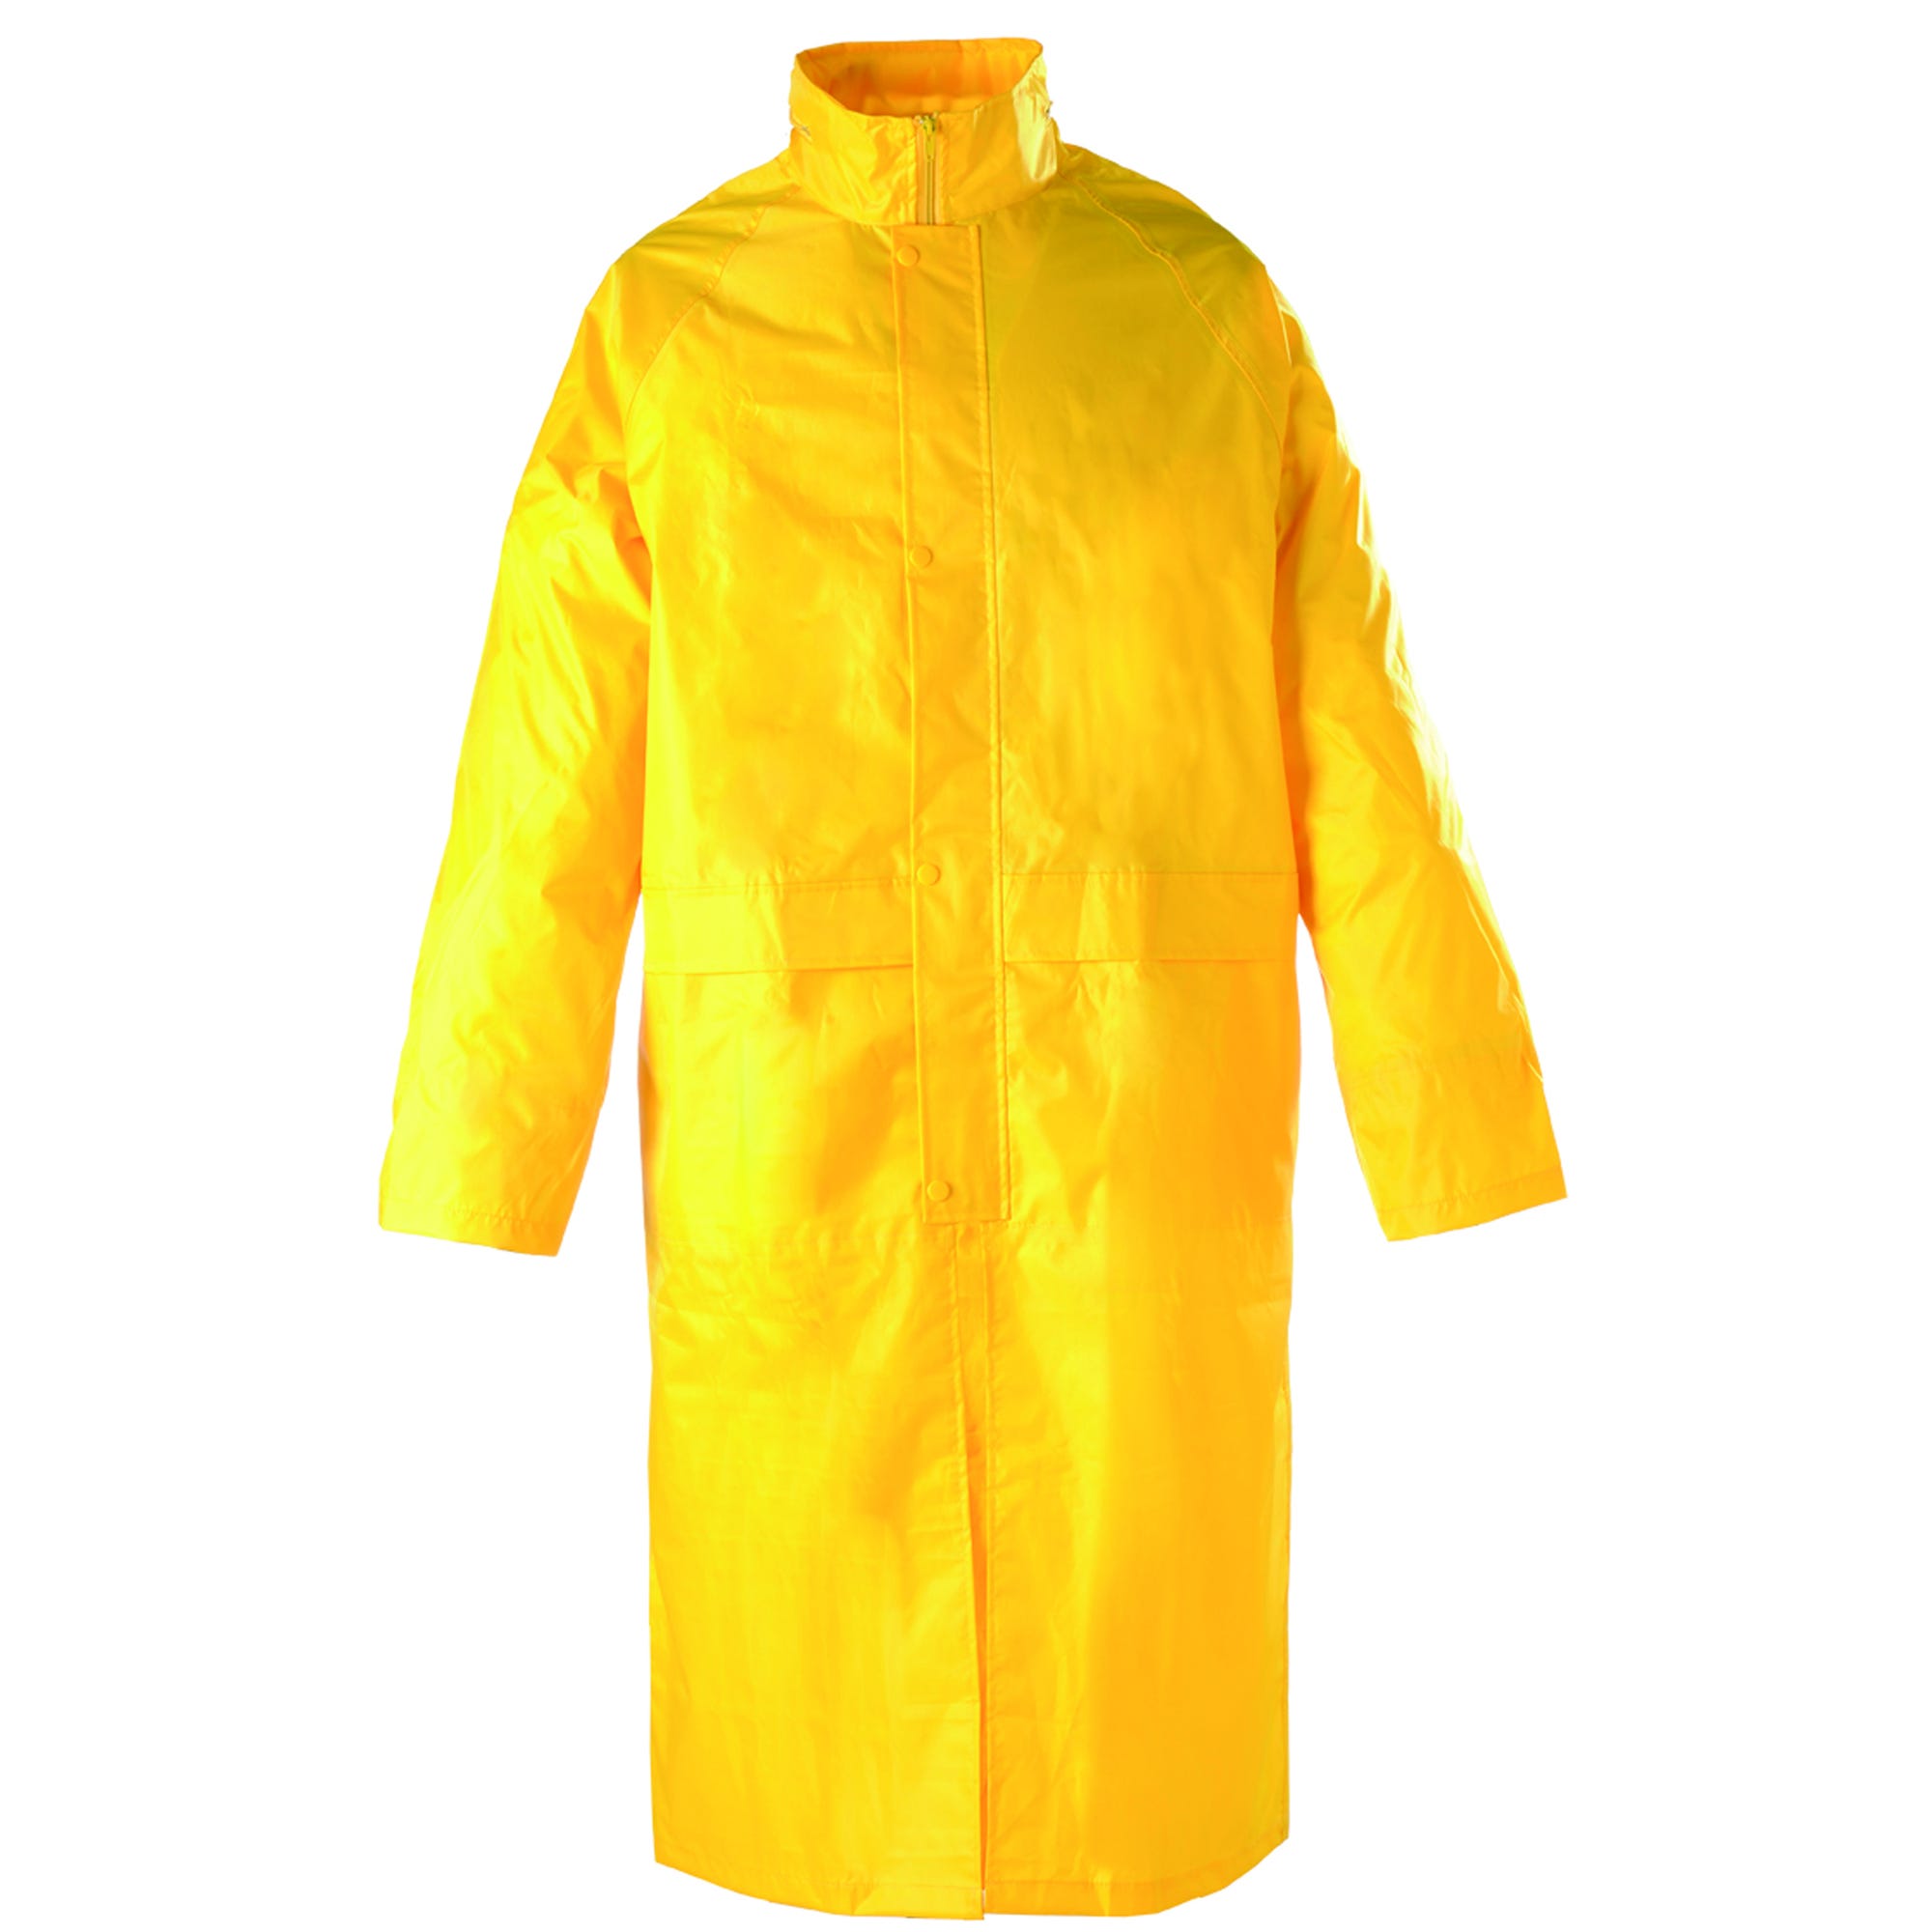 Manteau de pluie PVC, jaune, 185g/m² - COVERGUARD - Taille 3XL 1